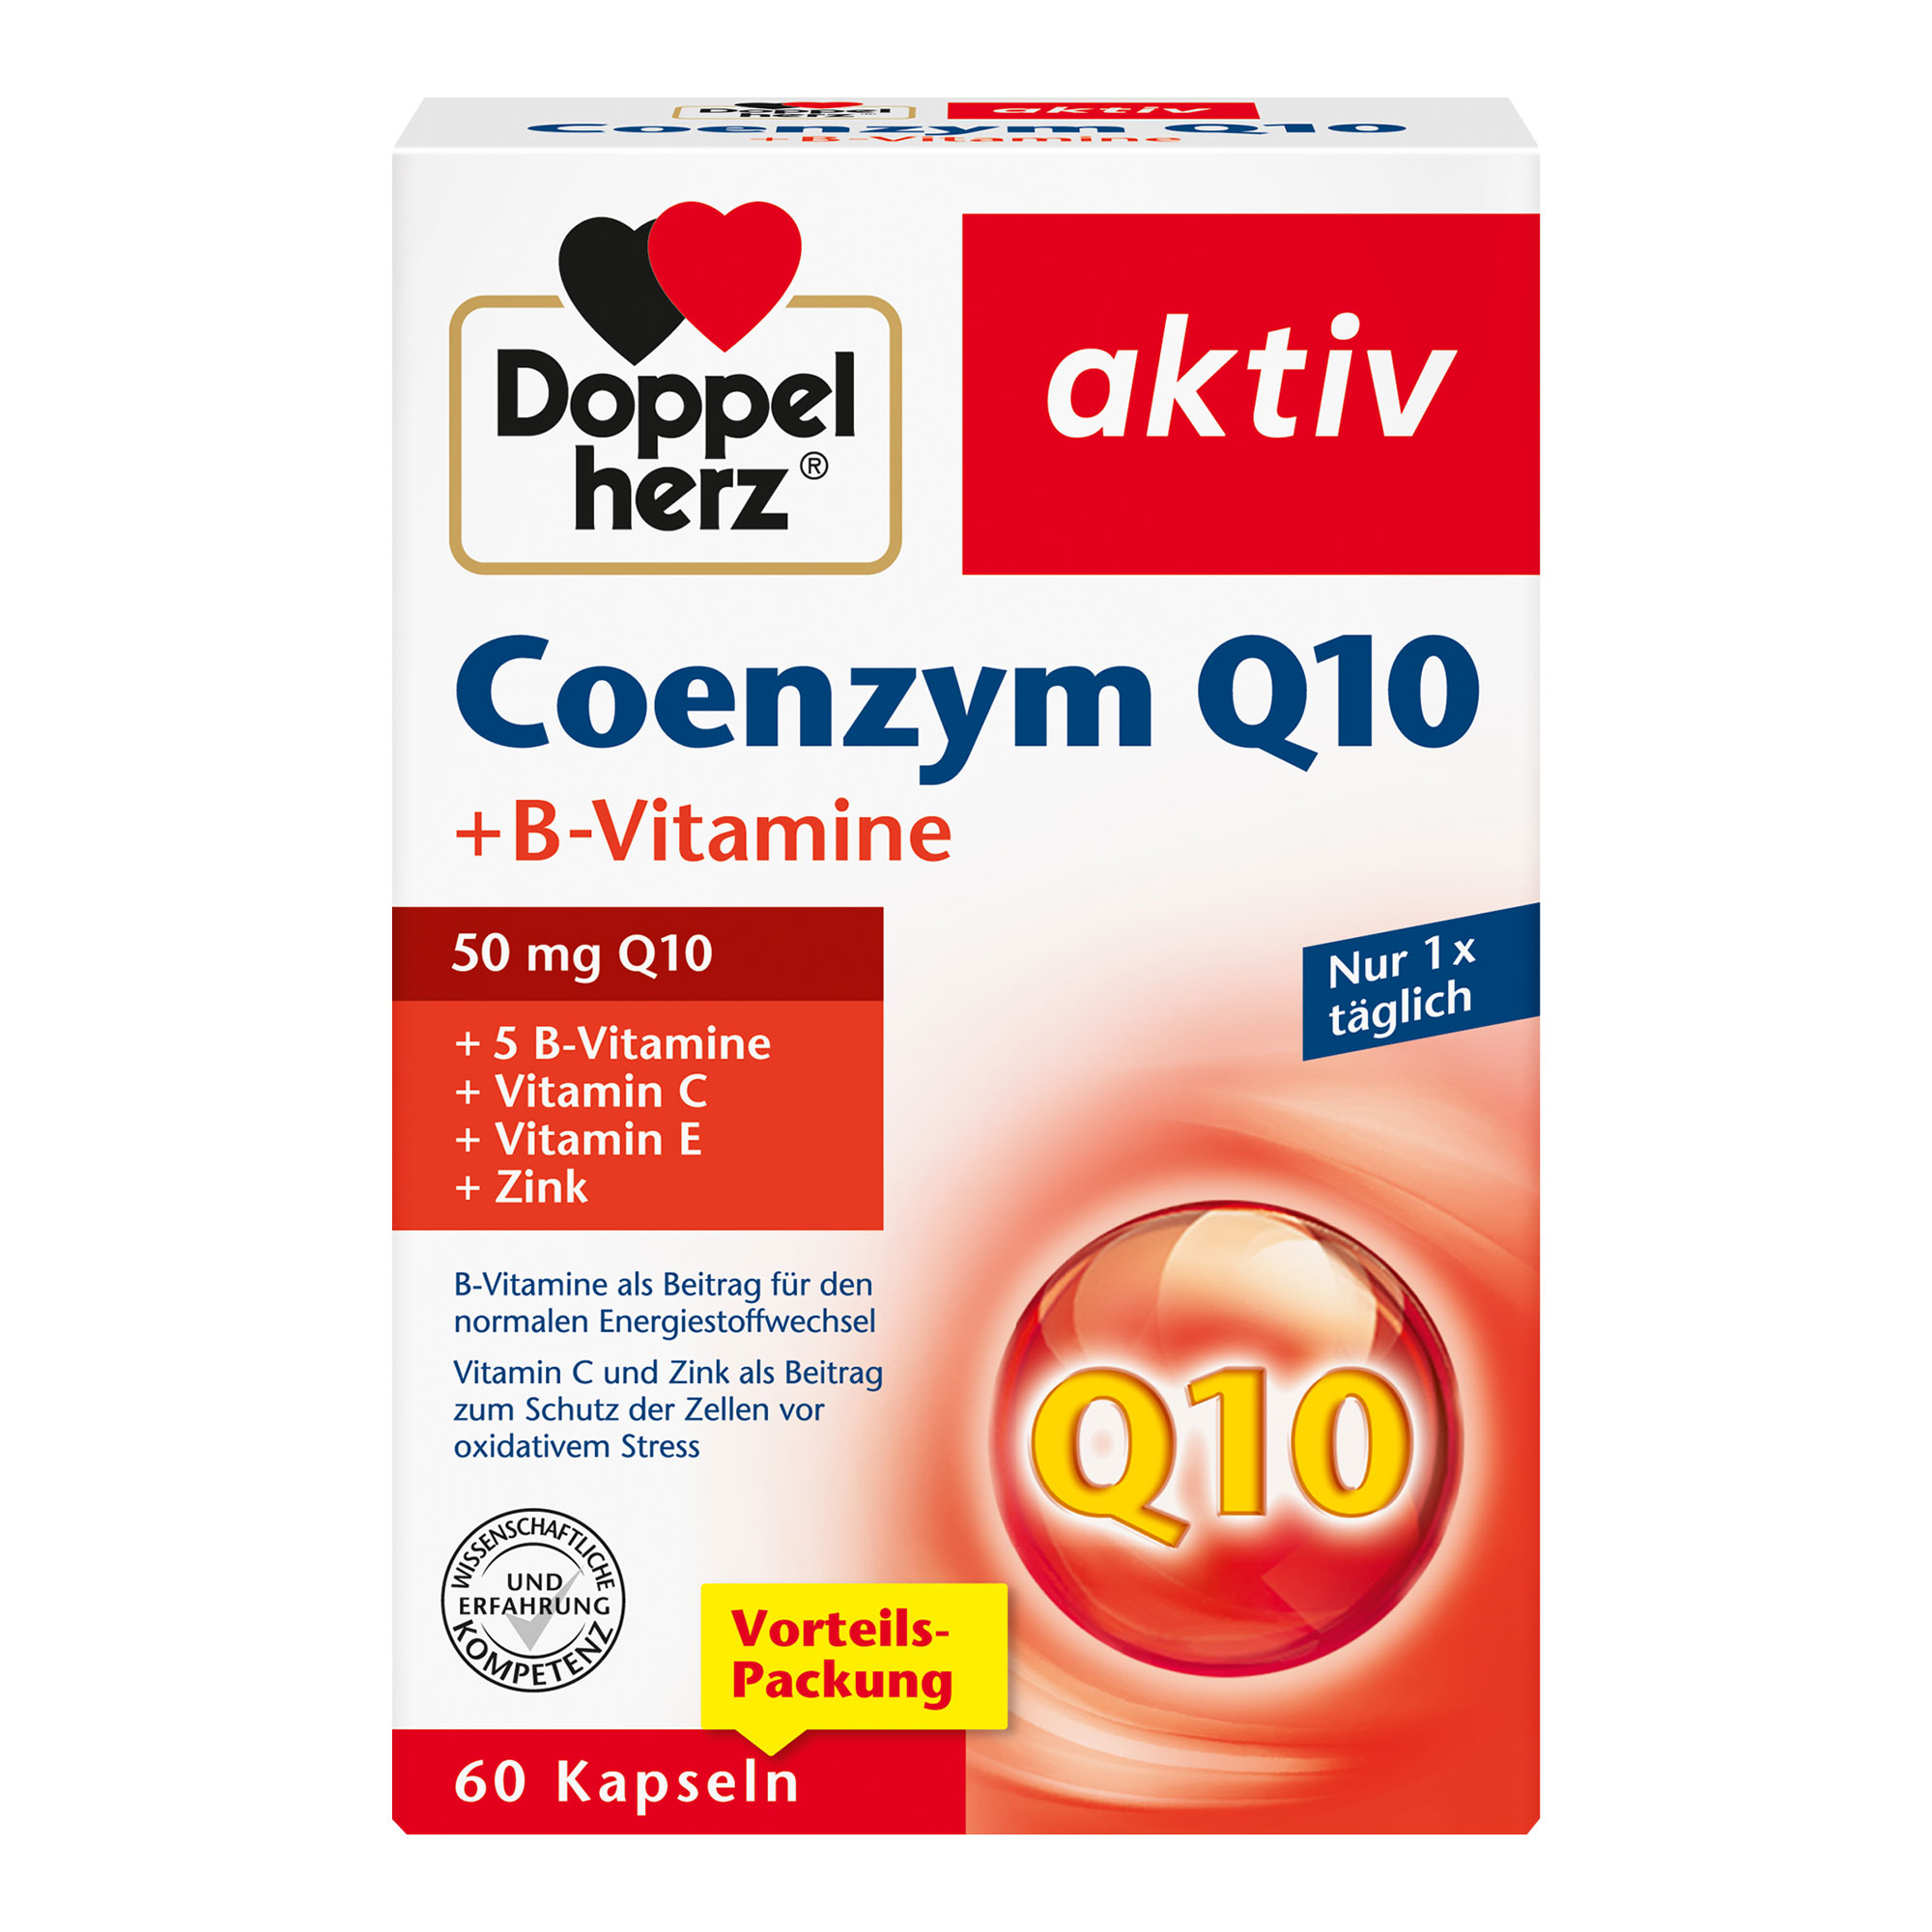 Nahrungsergänzungsmittel mit Coenzym Q10, Vitaminen und Zink.